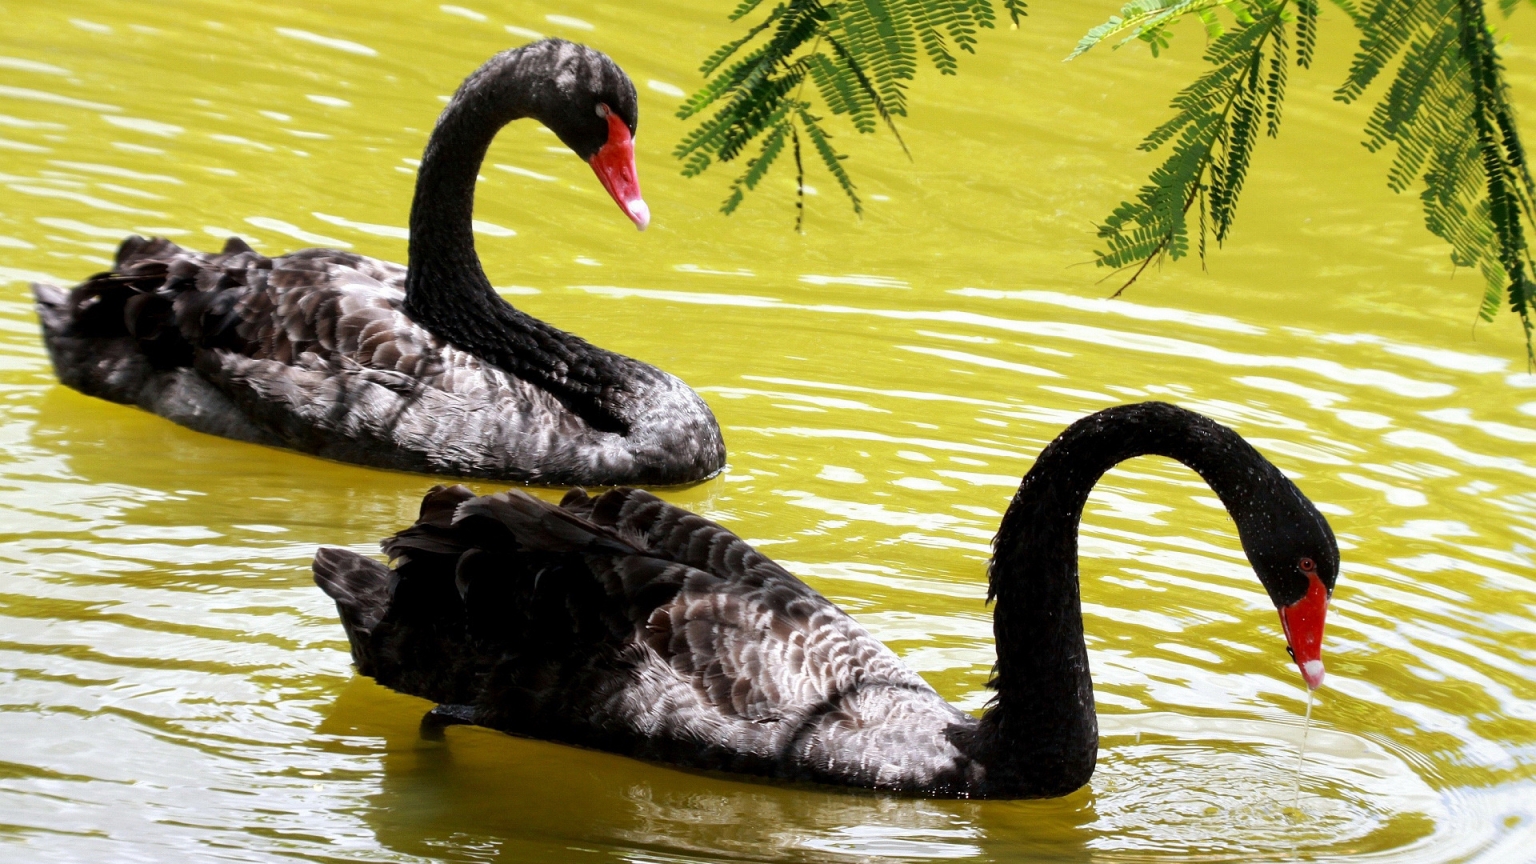 Black Swans for 1536 x 864 HDTV resolution